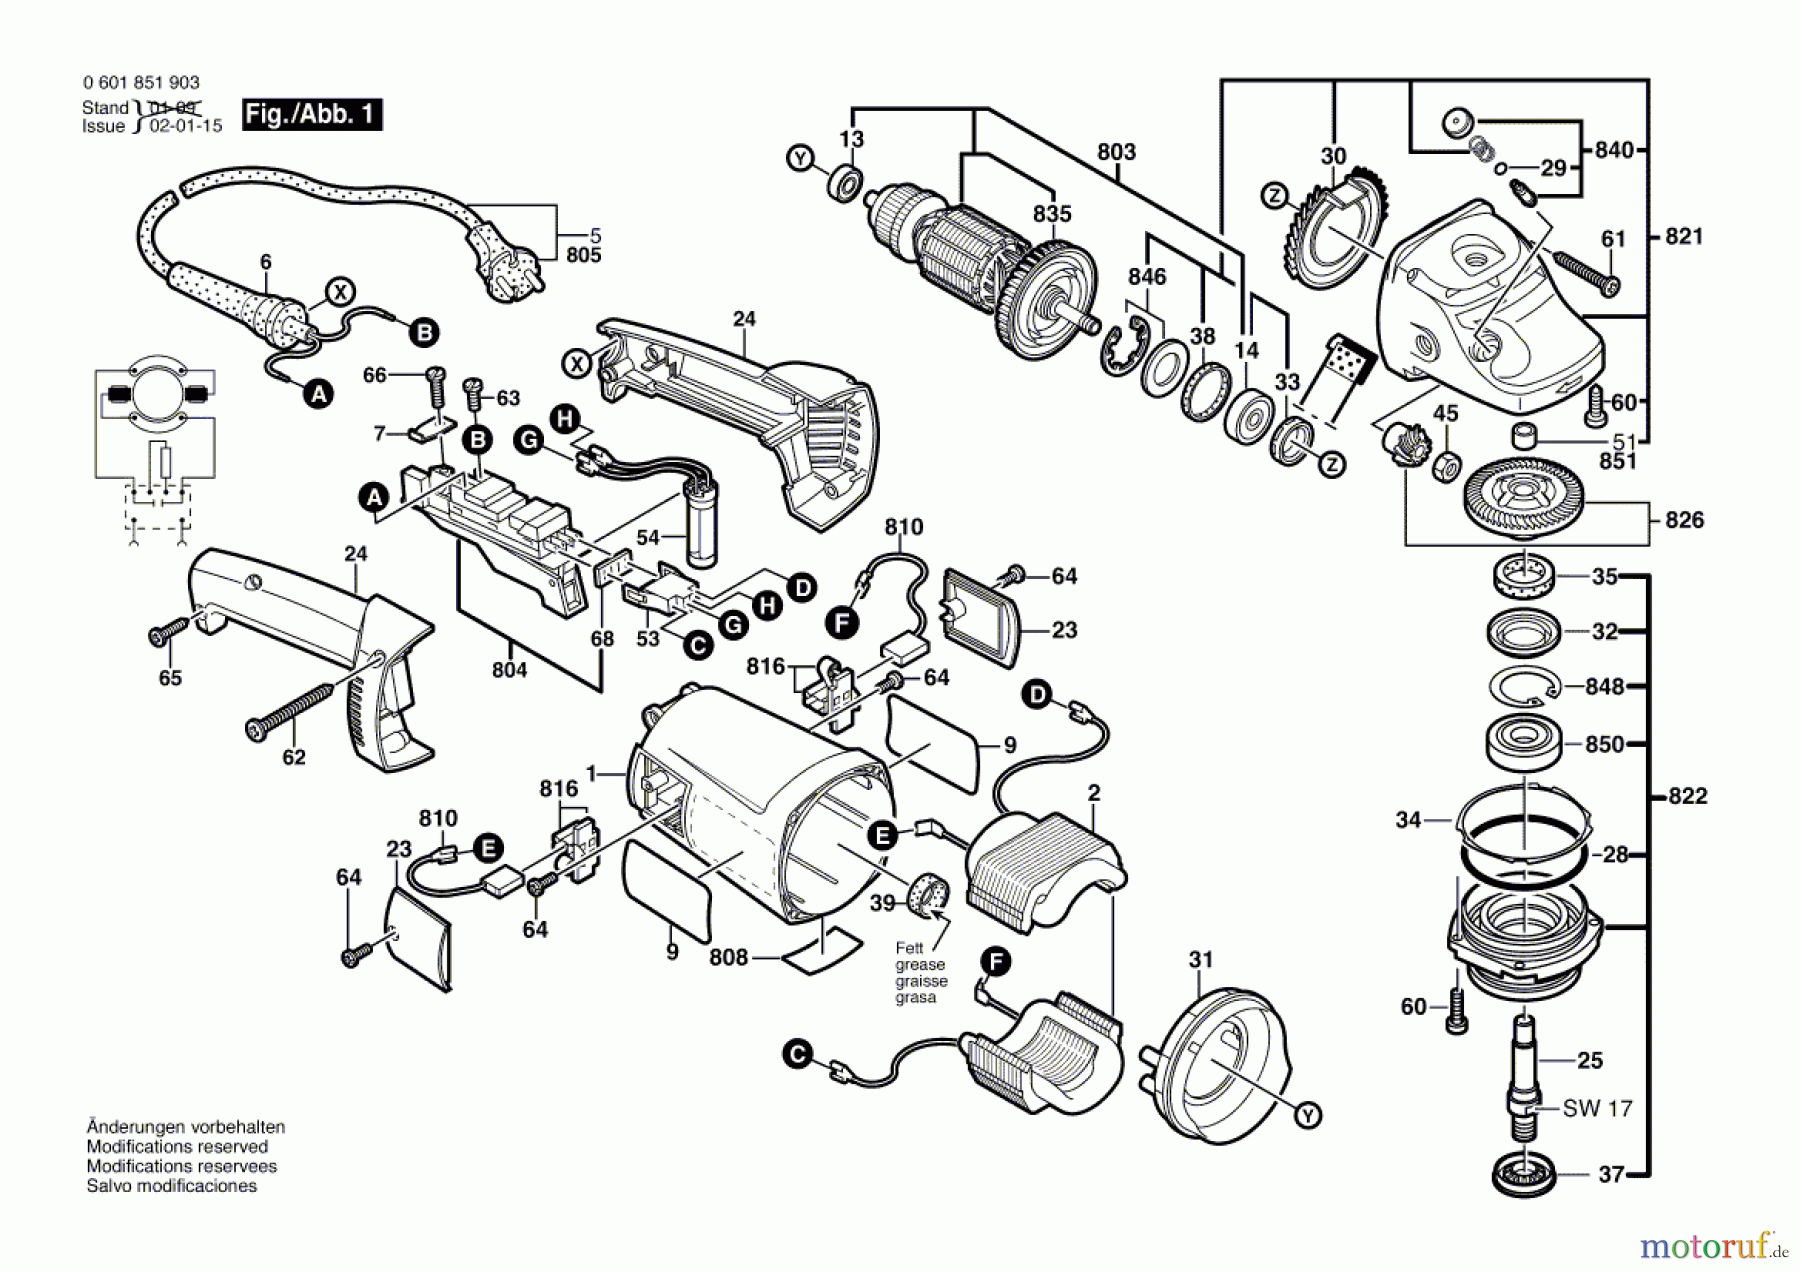  Bosch Werkzeug Winkelschleifer GWS 21-180 JH Seite 1